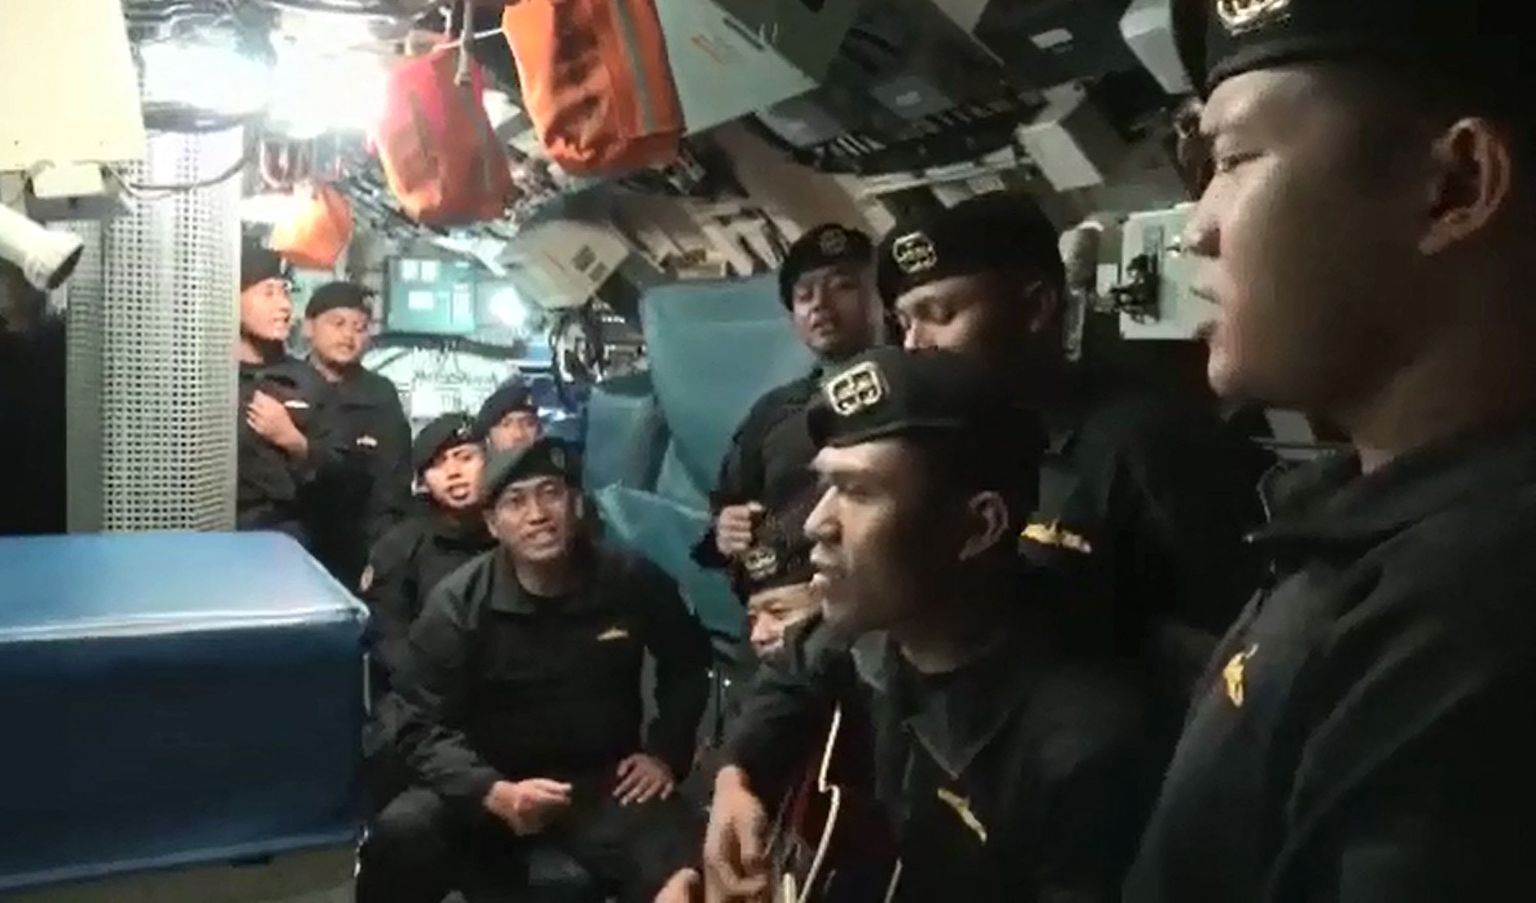 Kaader videost, millel on näha Indoneesia allveelaeva KRI Nanggala 402 meeskonnaliikmeid laulmas. Allveelaev kadus 21. aprillil Bali saare lähistel treeningul olles. Laev leiti päevi hiljem üles 800 meetri sügavuselt, kõik 53 meeskonnaliiget kaotasid elu